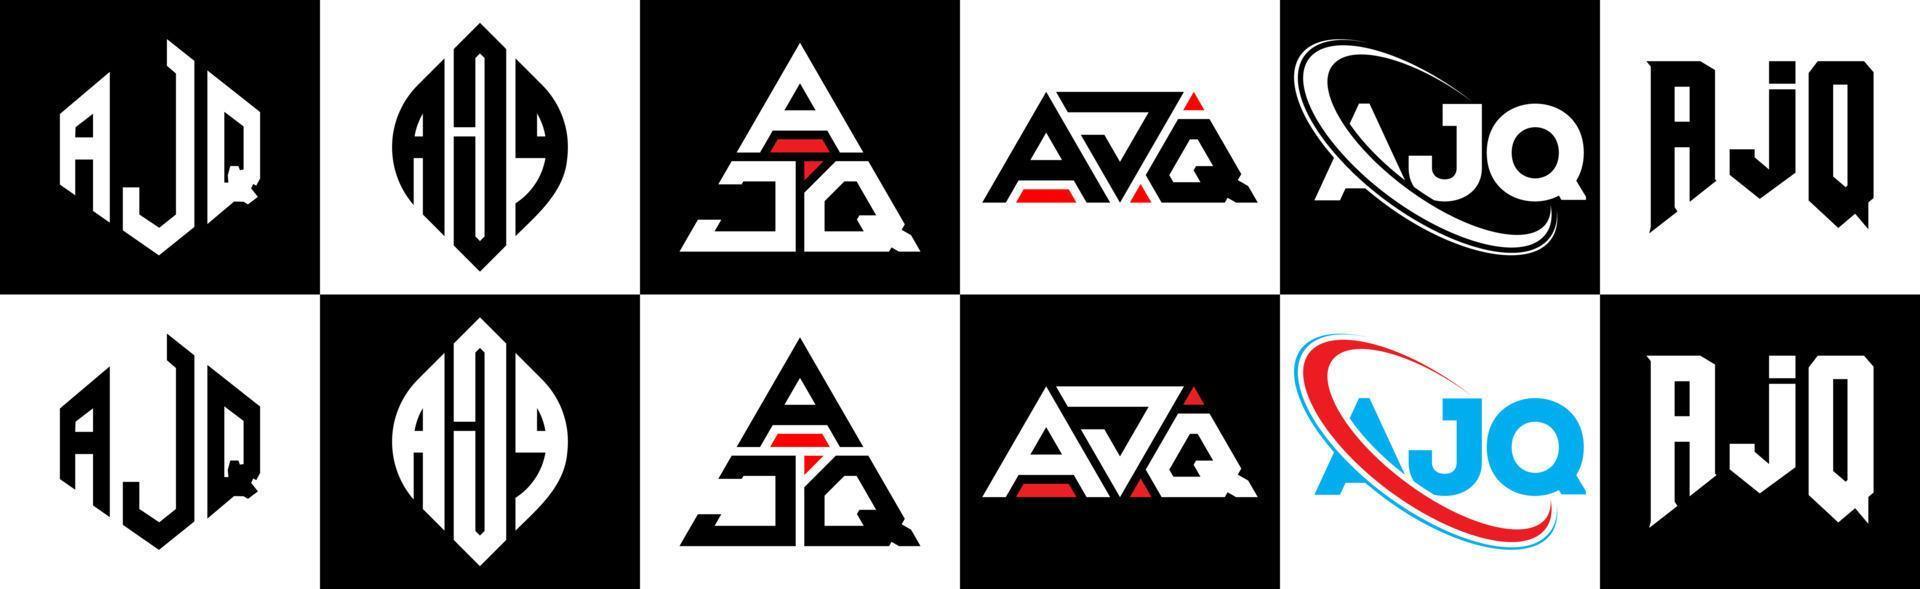 création de logo de lettre ajq en six styles. polygone ajq, cercle, triangle, hexagone, style plat et simple avec logo de lettre de variation de couleur noir et blanc dans un plan de travail. logo minimaliste et classique ajq vecteur